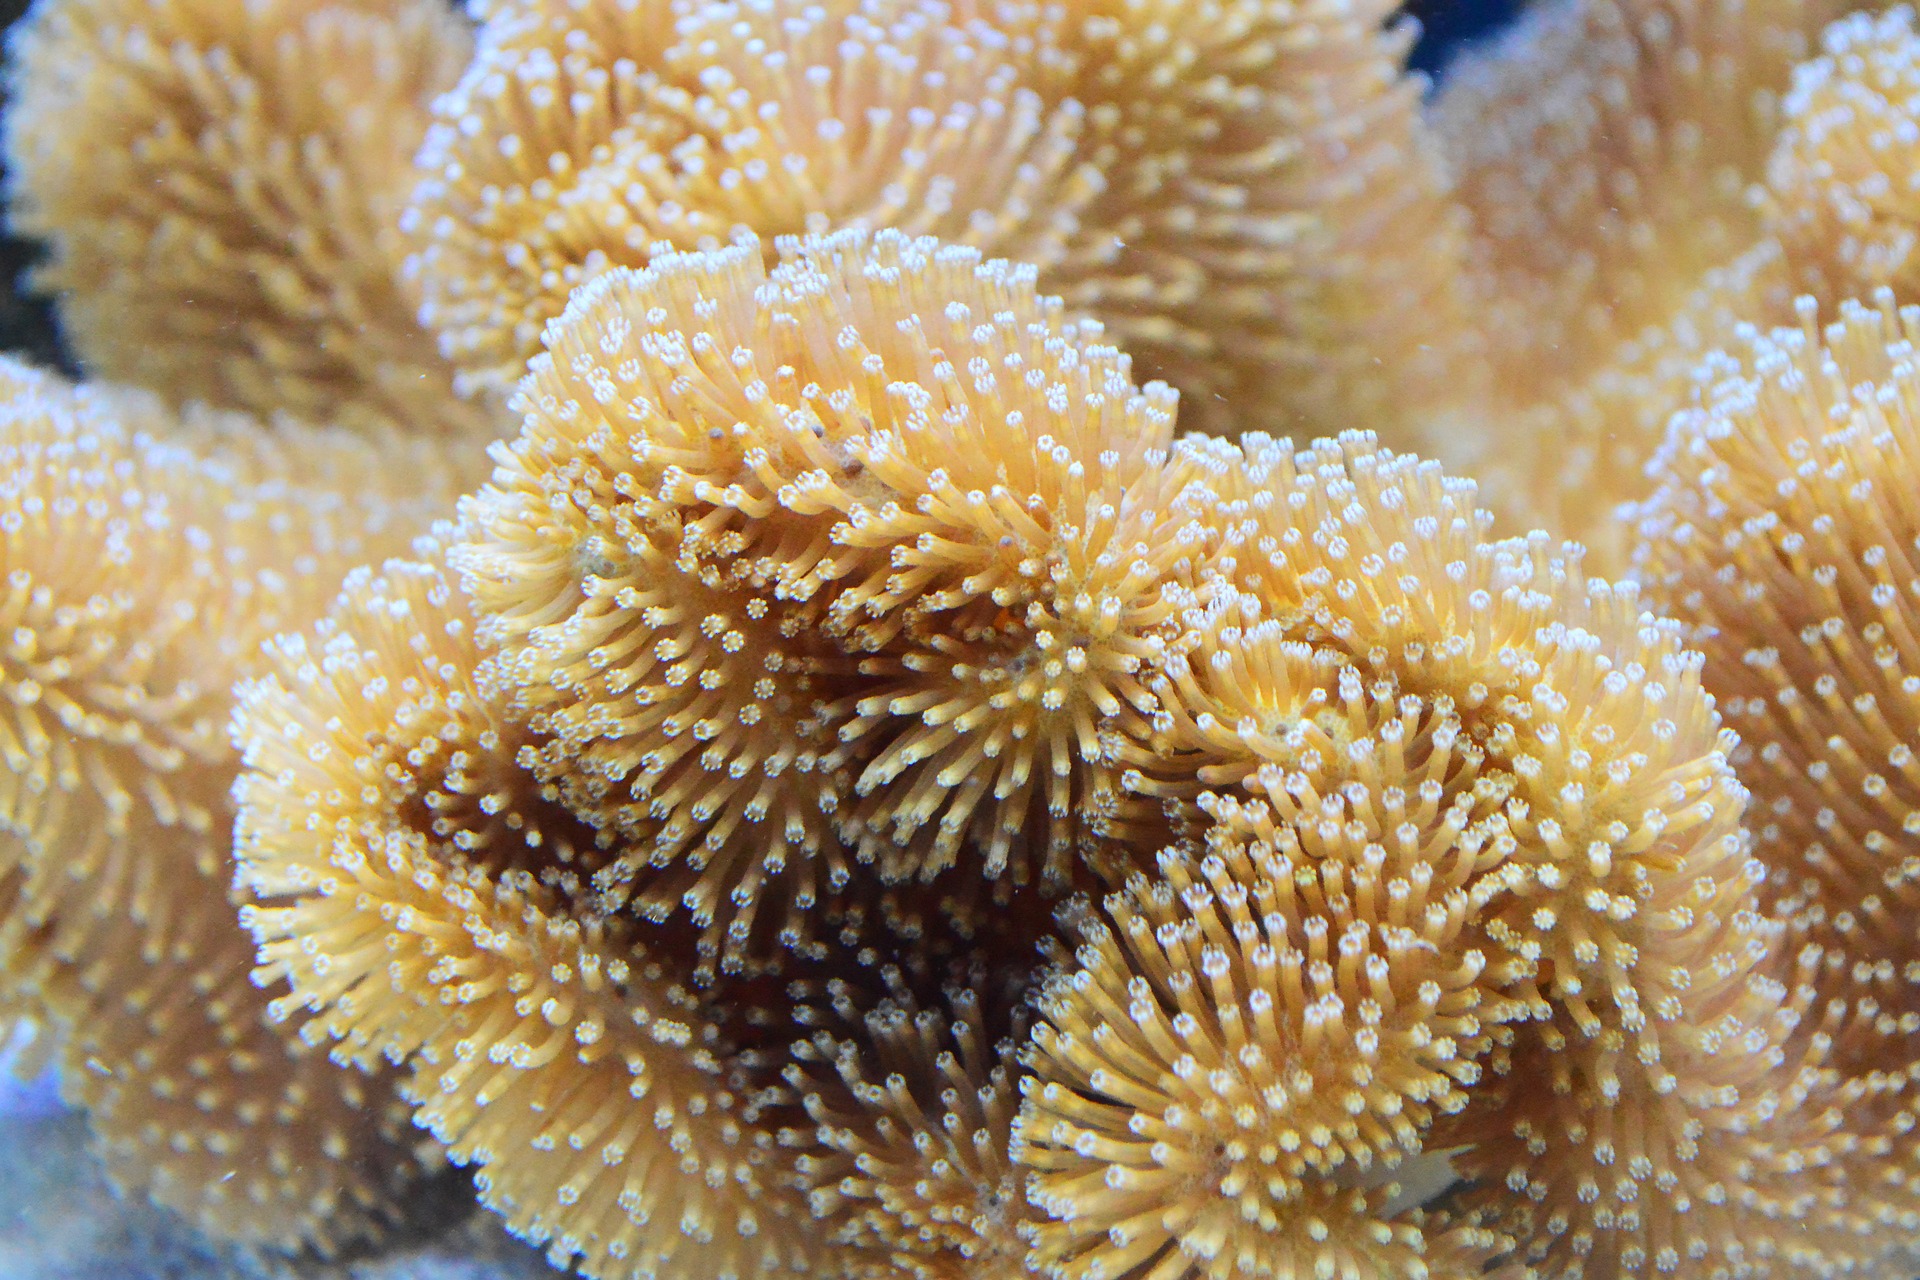 coral-1318694_1920.jpg